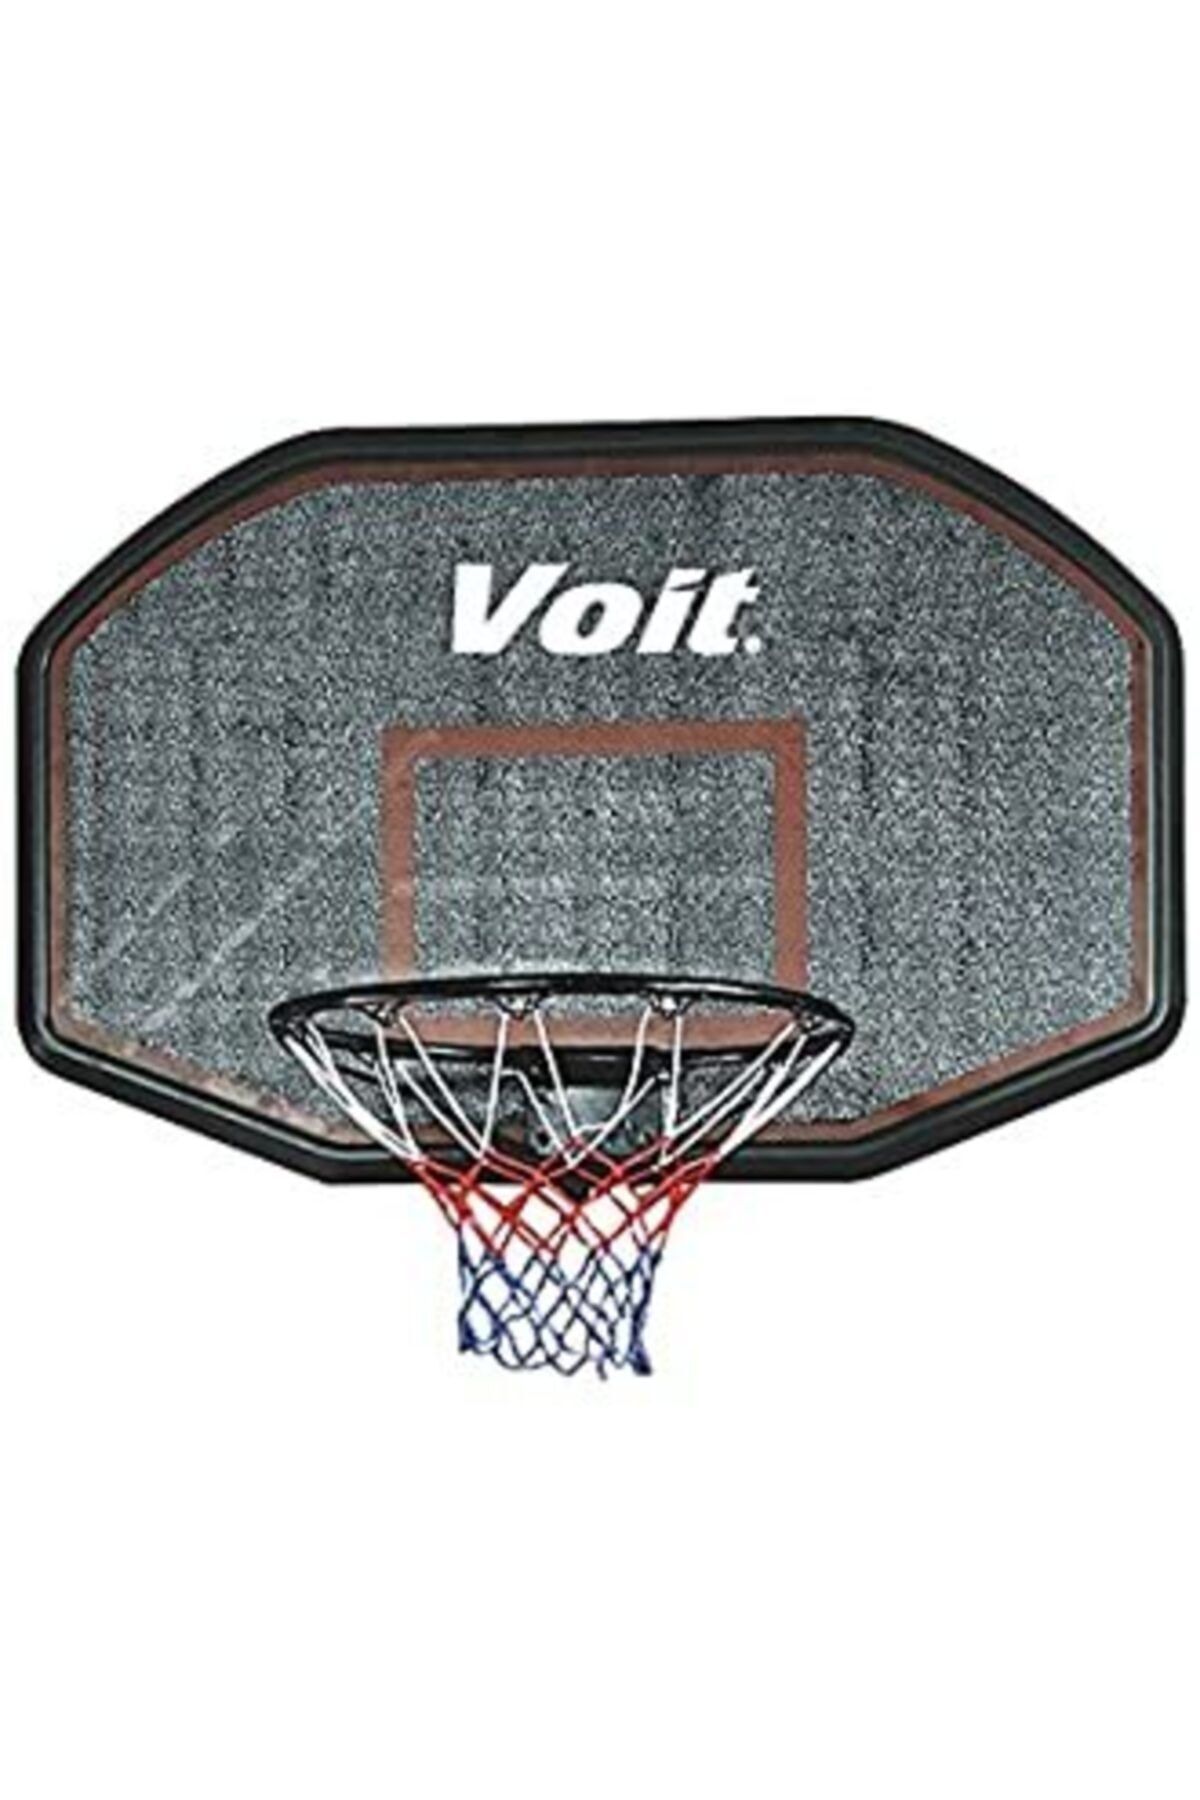 Voit Cdb001br Duvara Monte Basketbol Potası